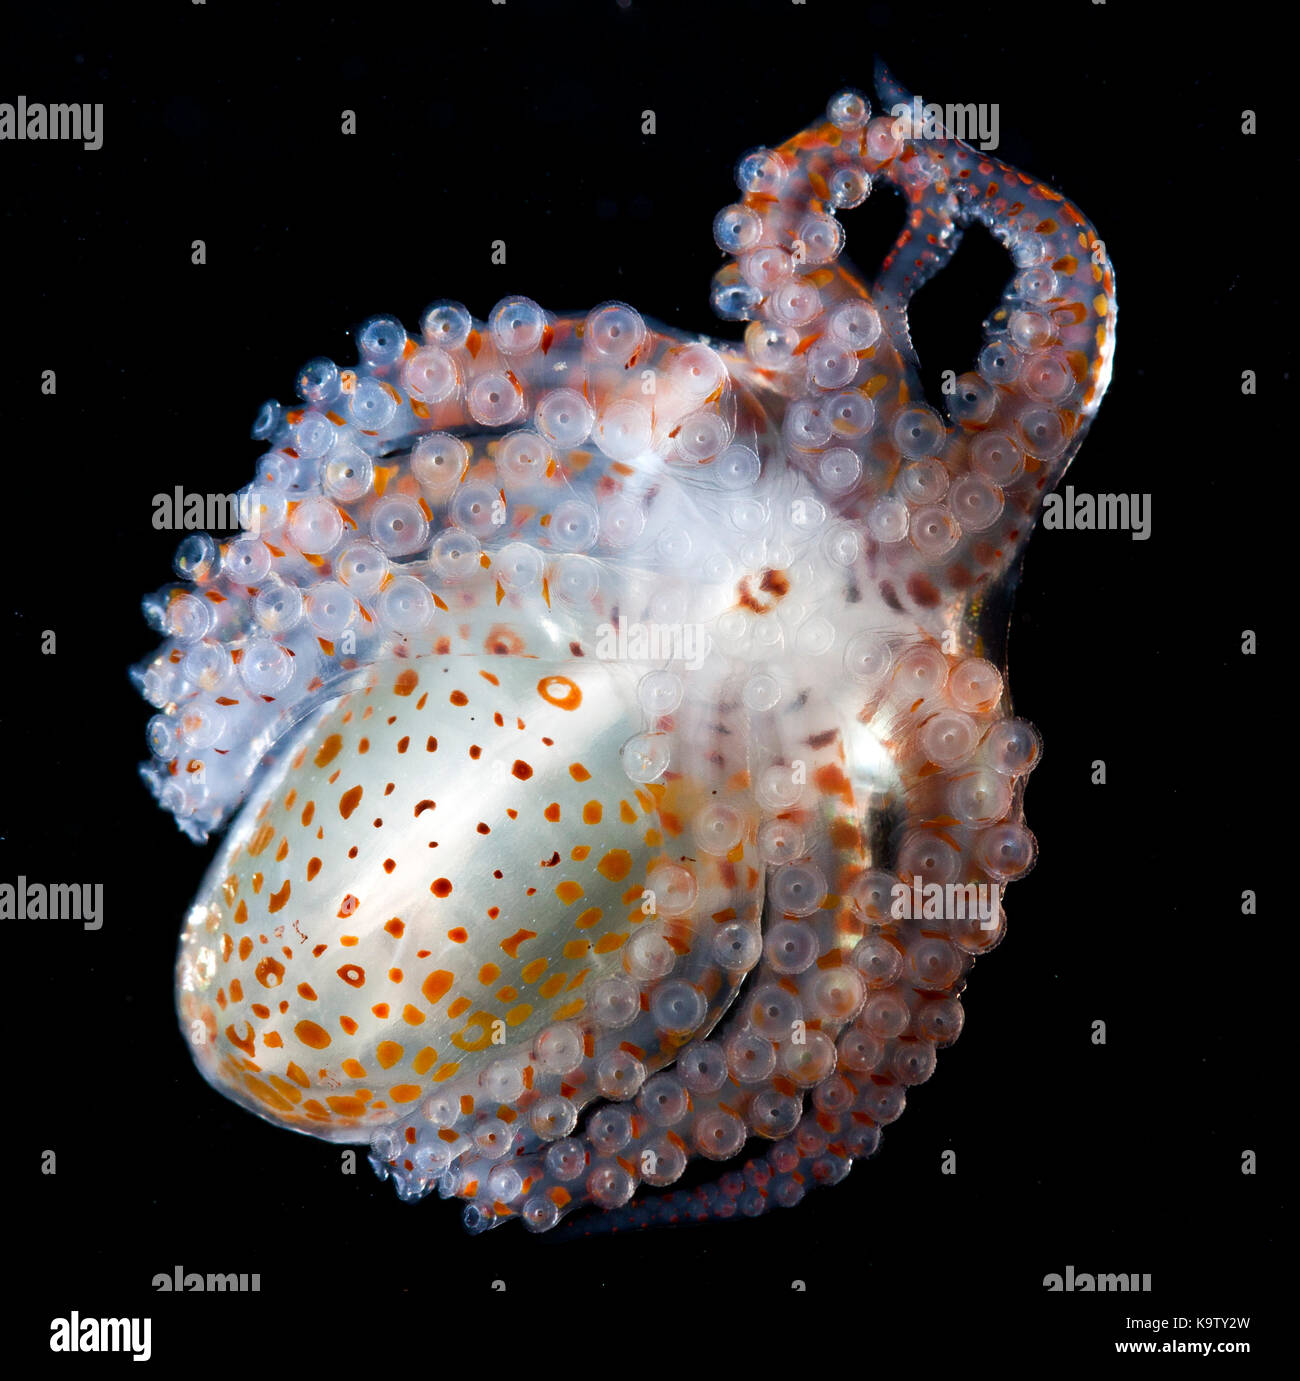 Die Entwicklung von Octopus paralarva häufig findet man auch Festhalten an driften Treibgut. Stockfoto